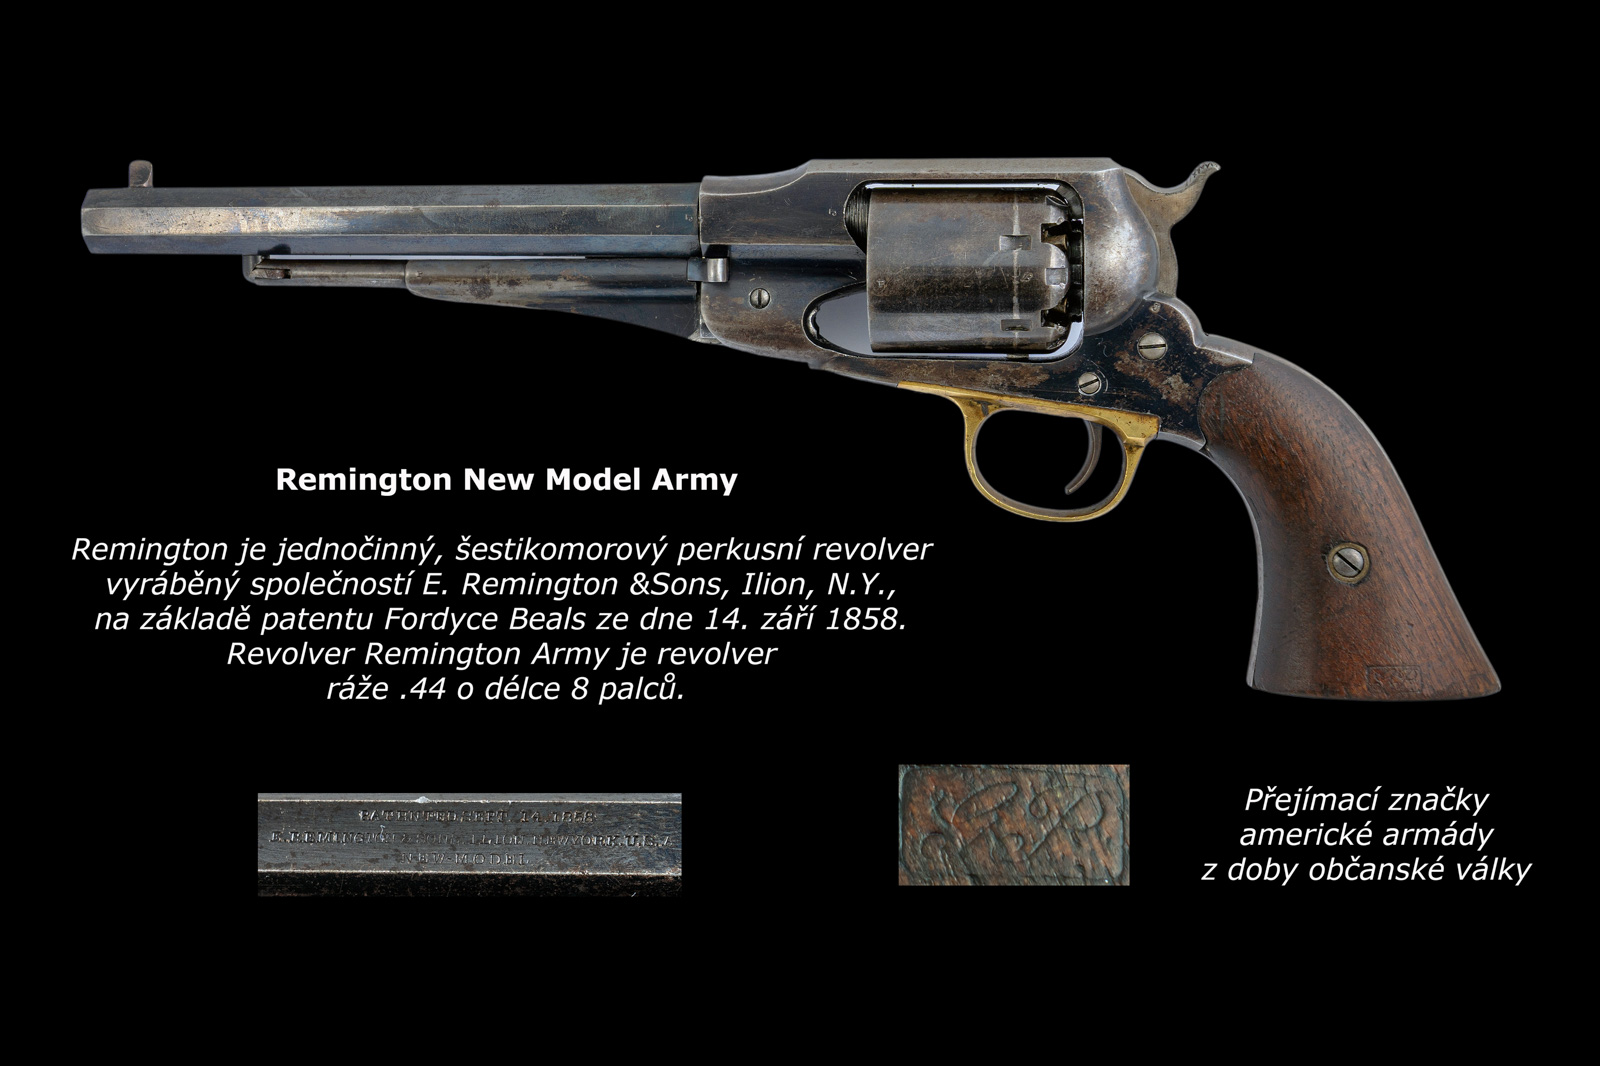 Remington finál